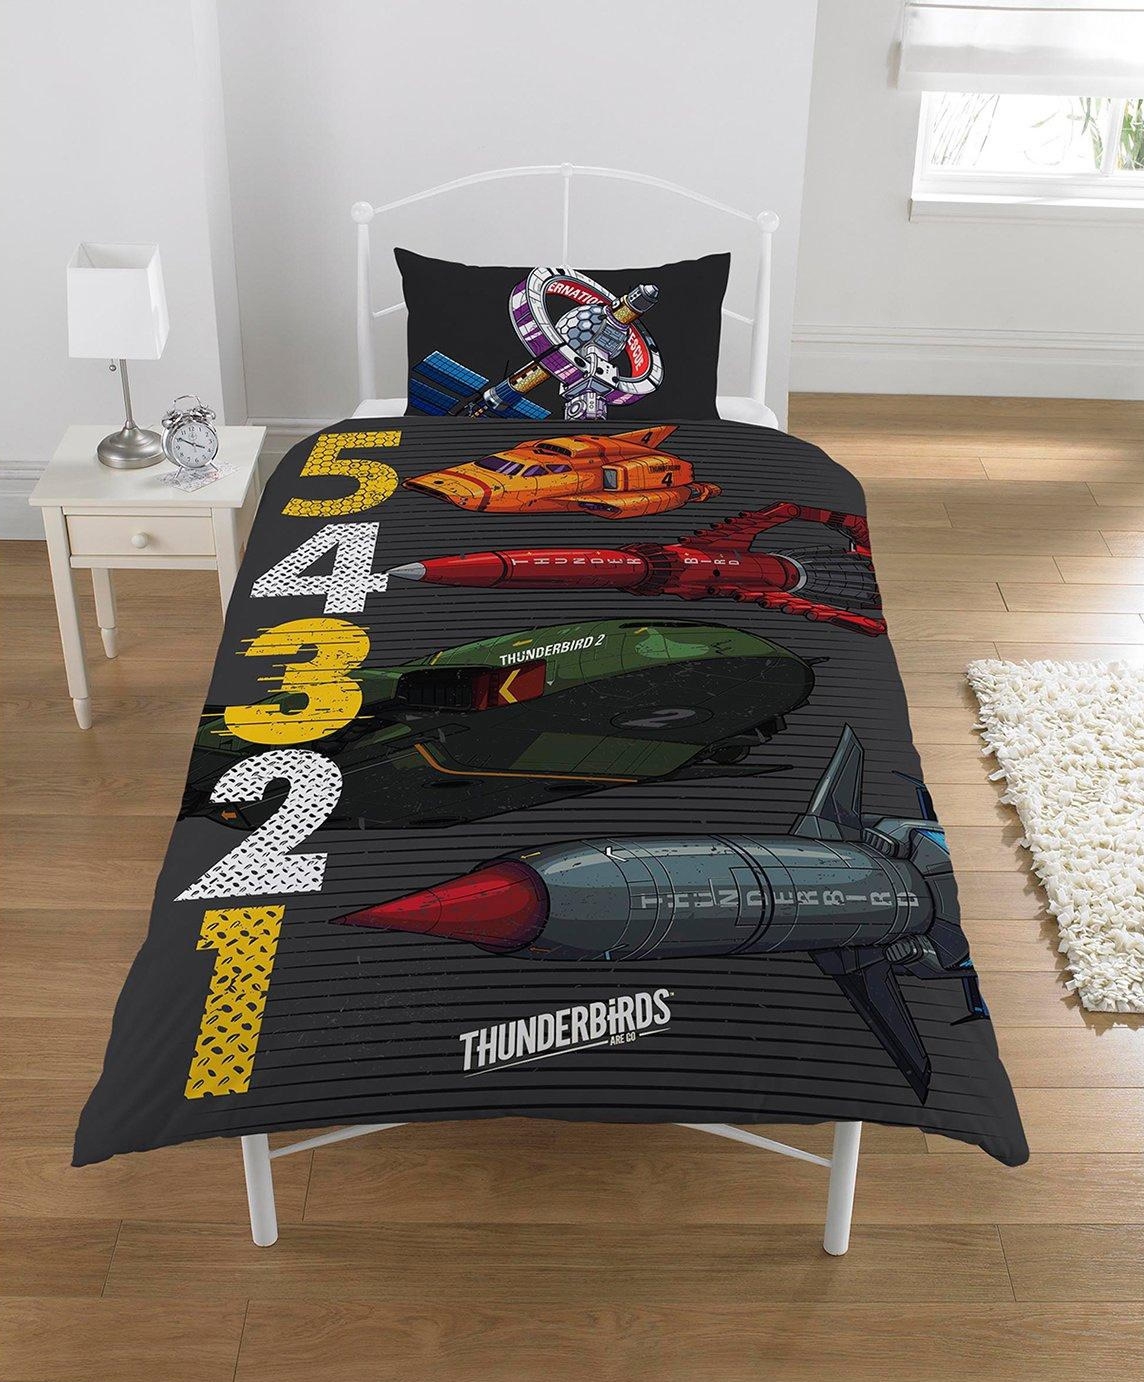 Thunderbirds 5 4 3 2 1 Panel Single Bed Duvet Quilt Cover Set